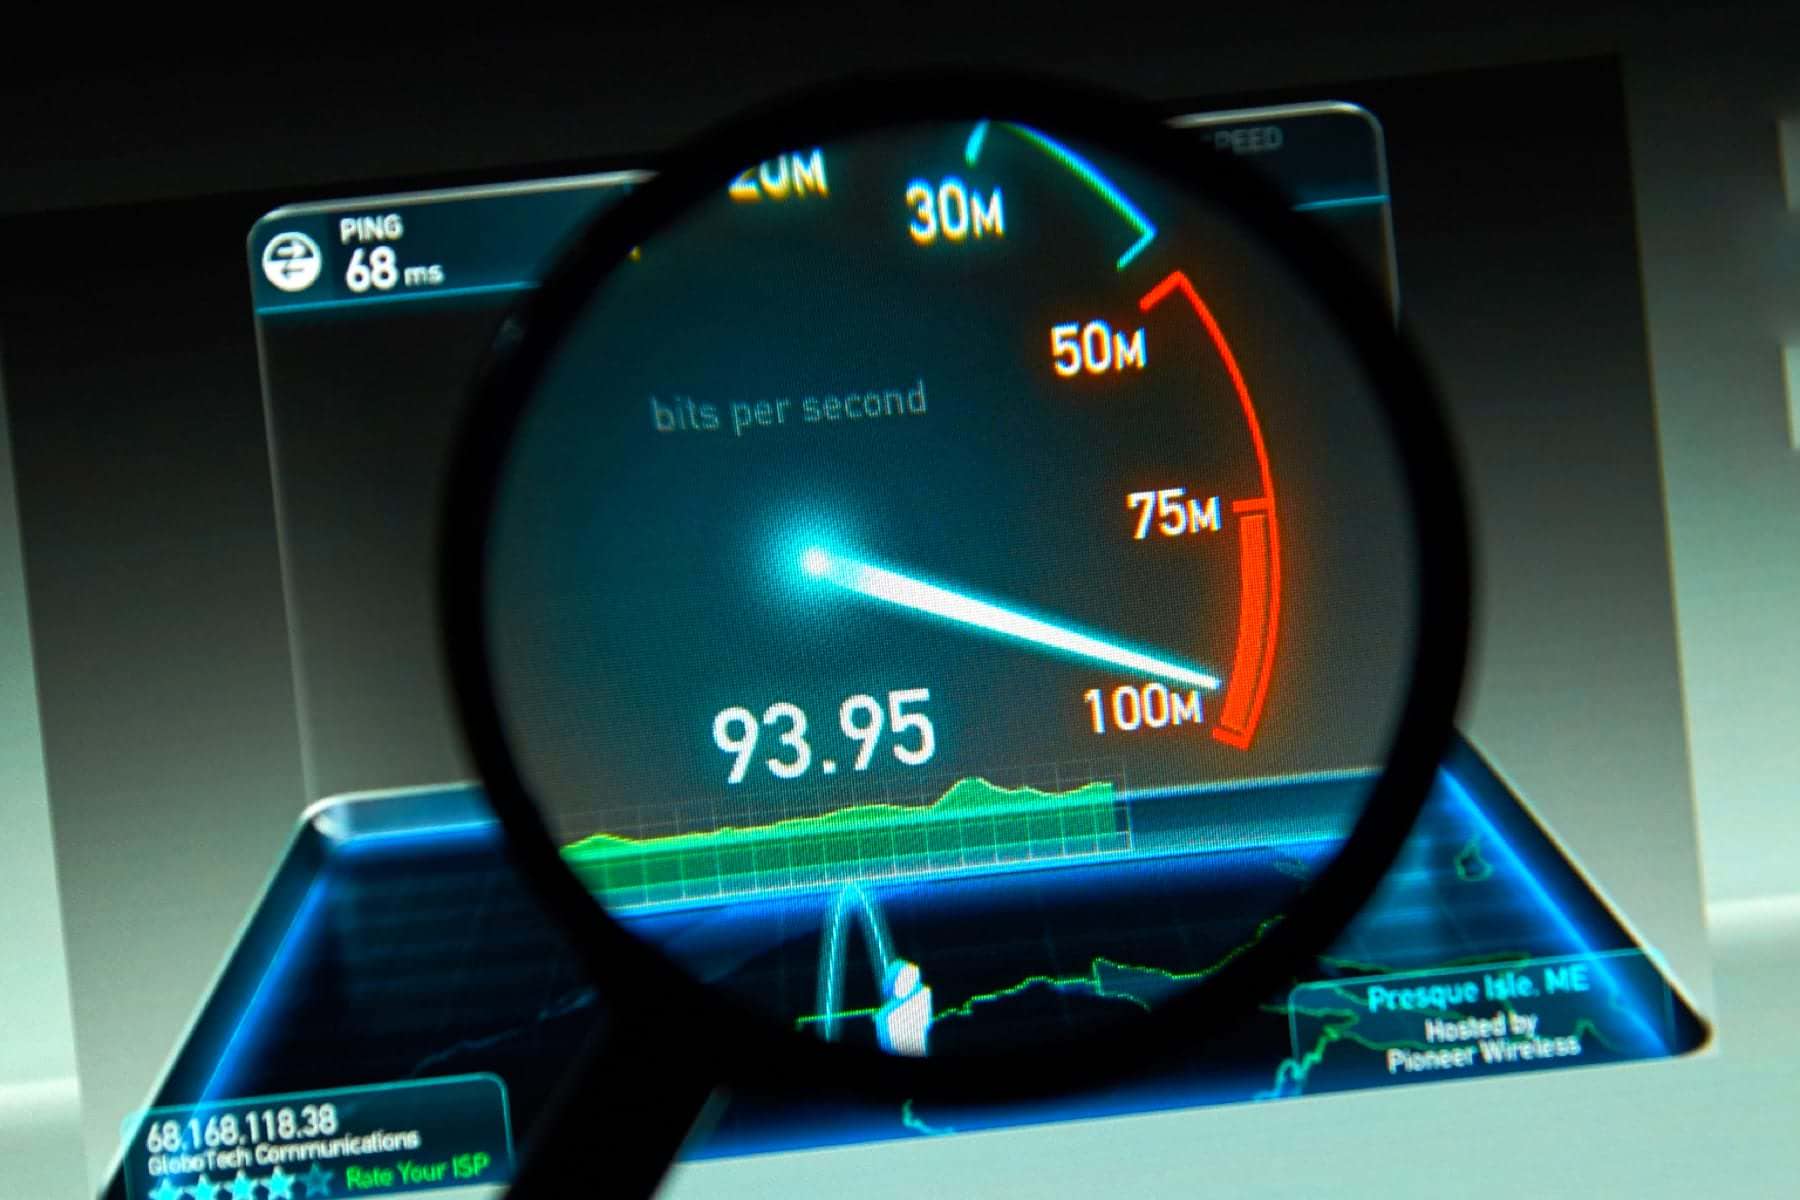 Скорость интернета новая. Скорость интернета. Высокая скорость интернета. Самая высокая скорость интернета. Спидтест скорости интернета.